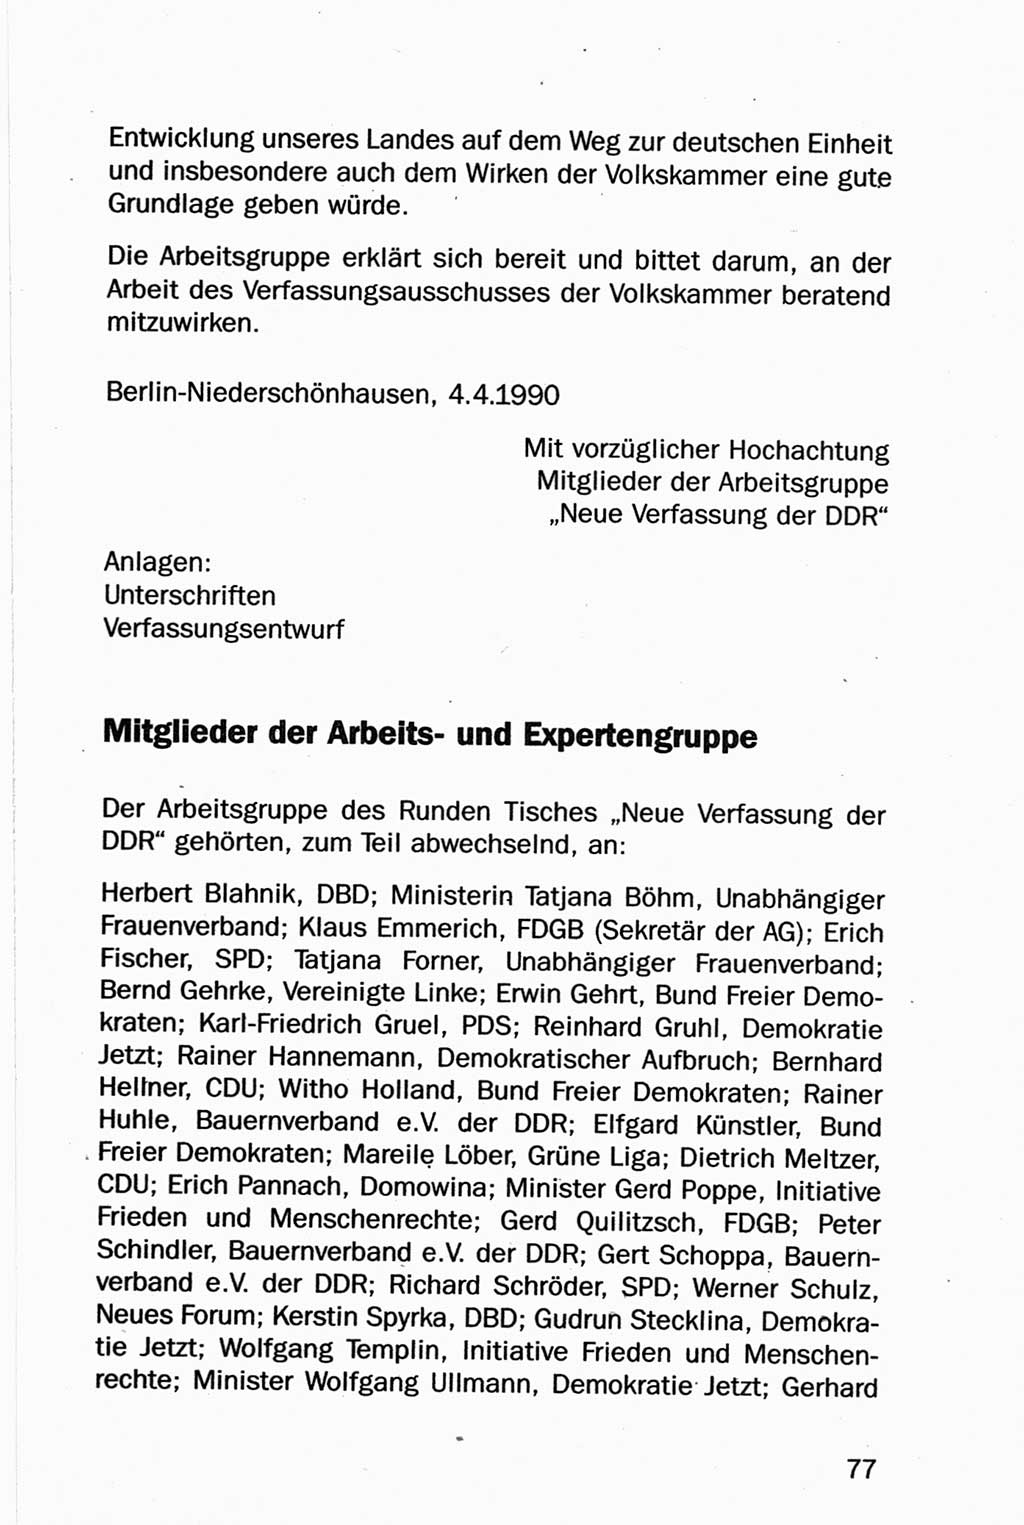 Entwurf Verfassung der Deutschen Demokratischen Republik (DDR), Arbeitsgruppe "Neue Verfassung der DDR" des Runden Tisches, Berlin 1990, Seite 77 (Entw. Verf. DDR 1990, S. 77)